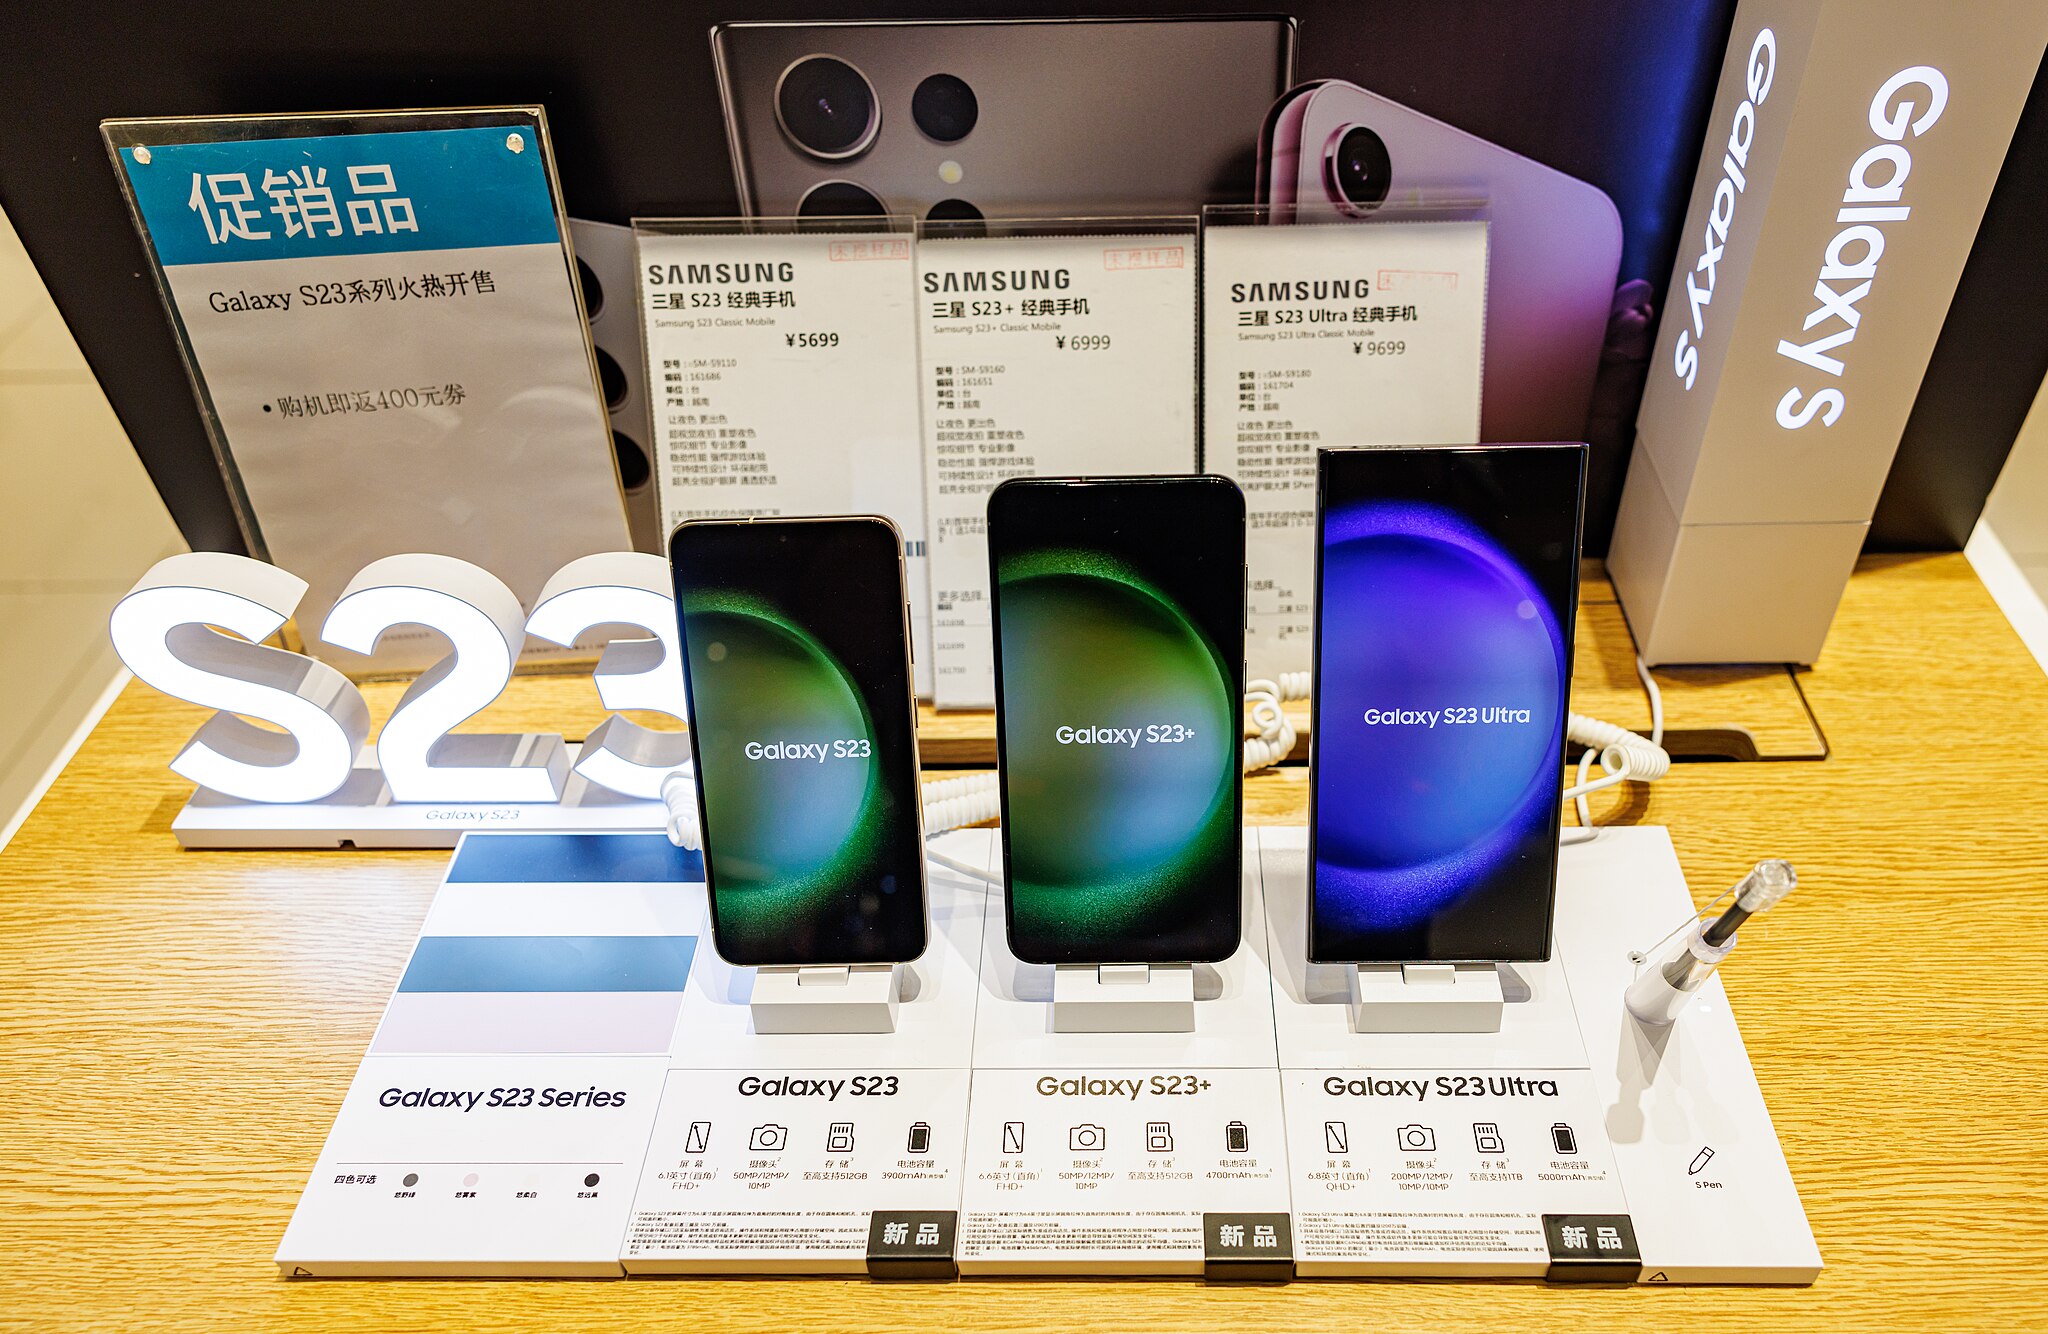 Le Samsung Galaxy S23 devrait bénéficier de 4 fonctionnalités d’IA de pointe